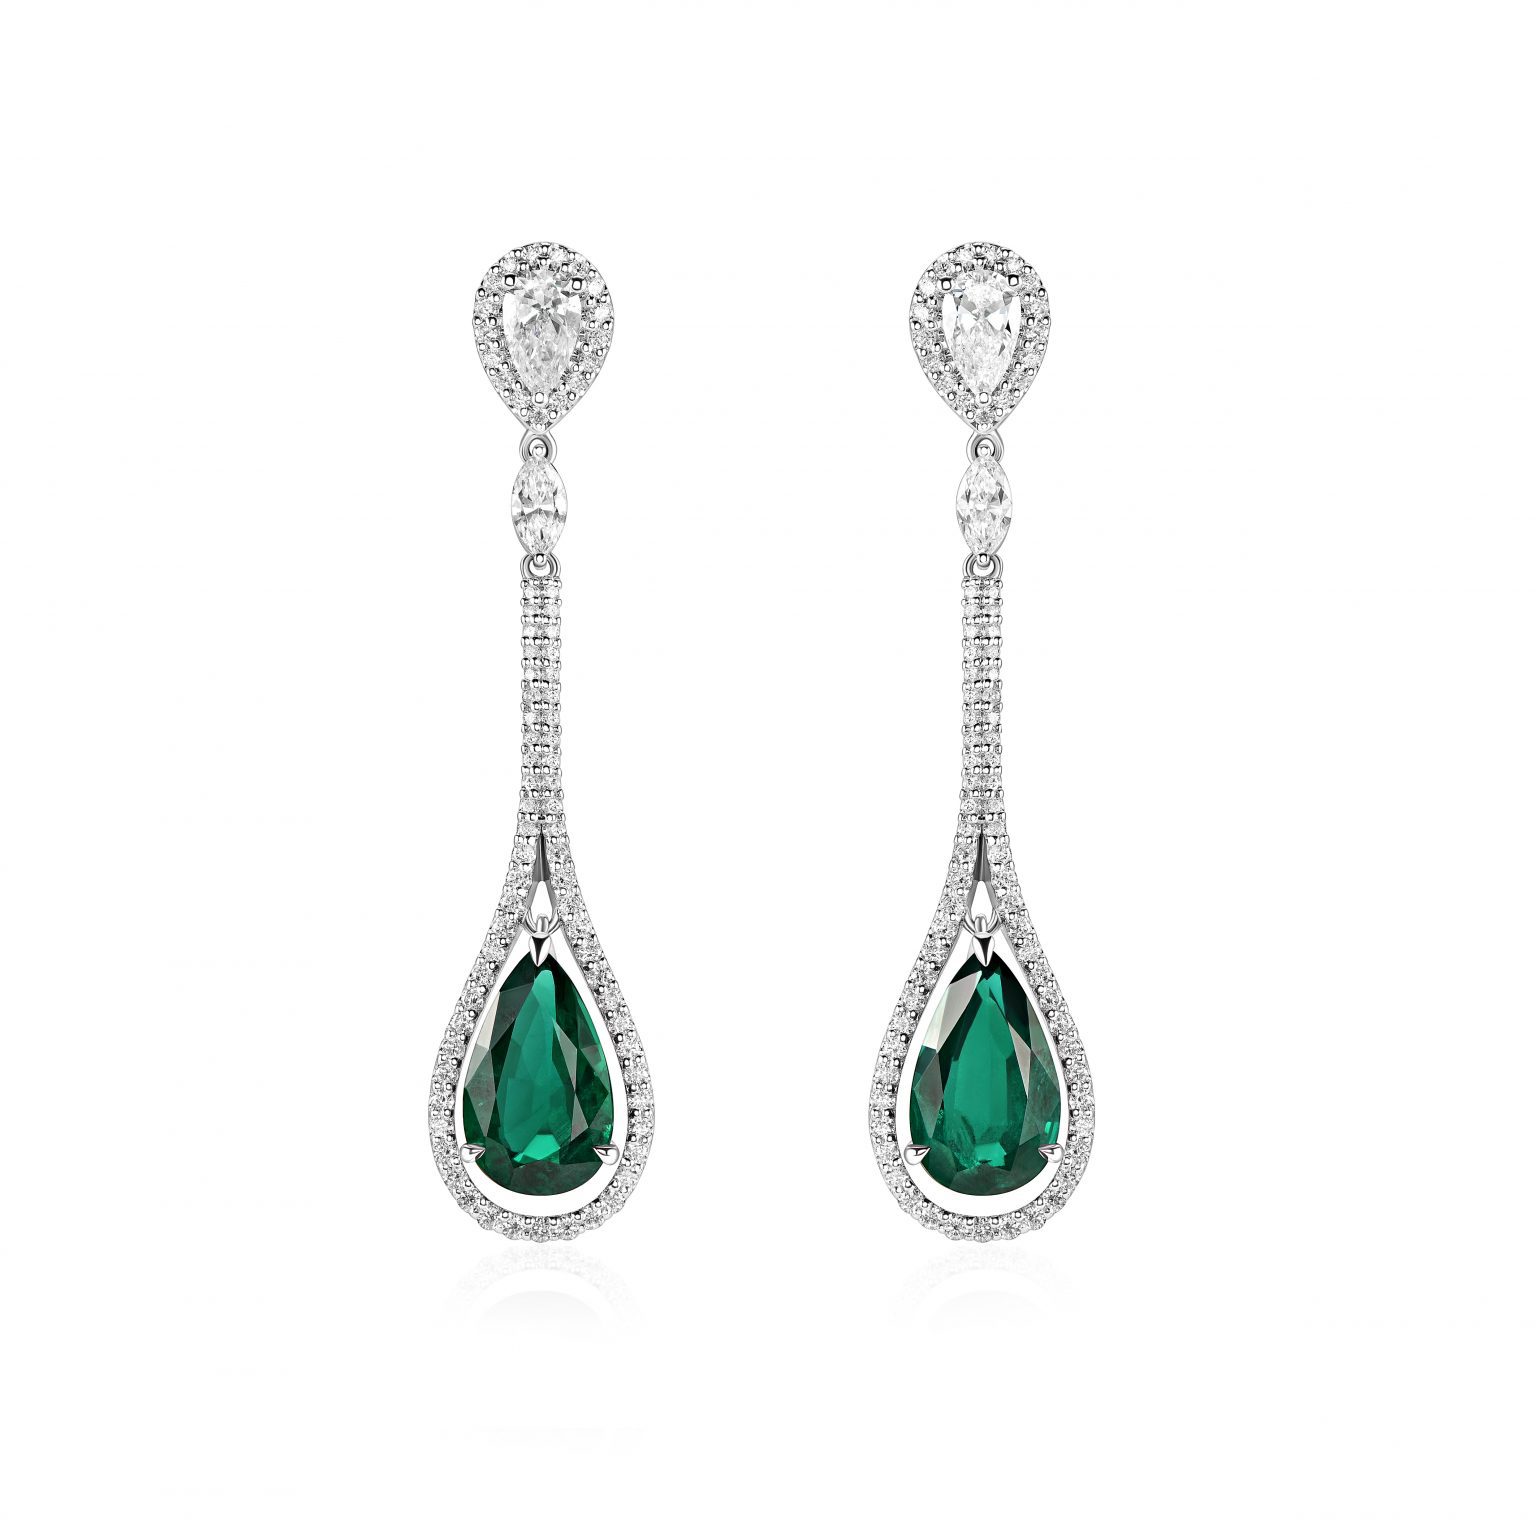 Emerald earrings 3.85 ct